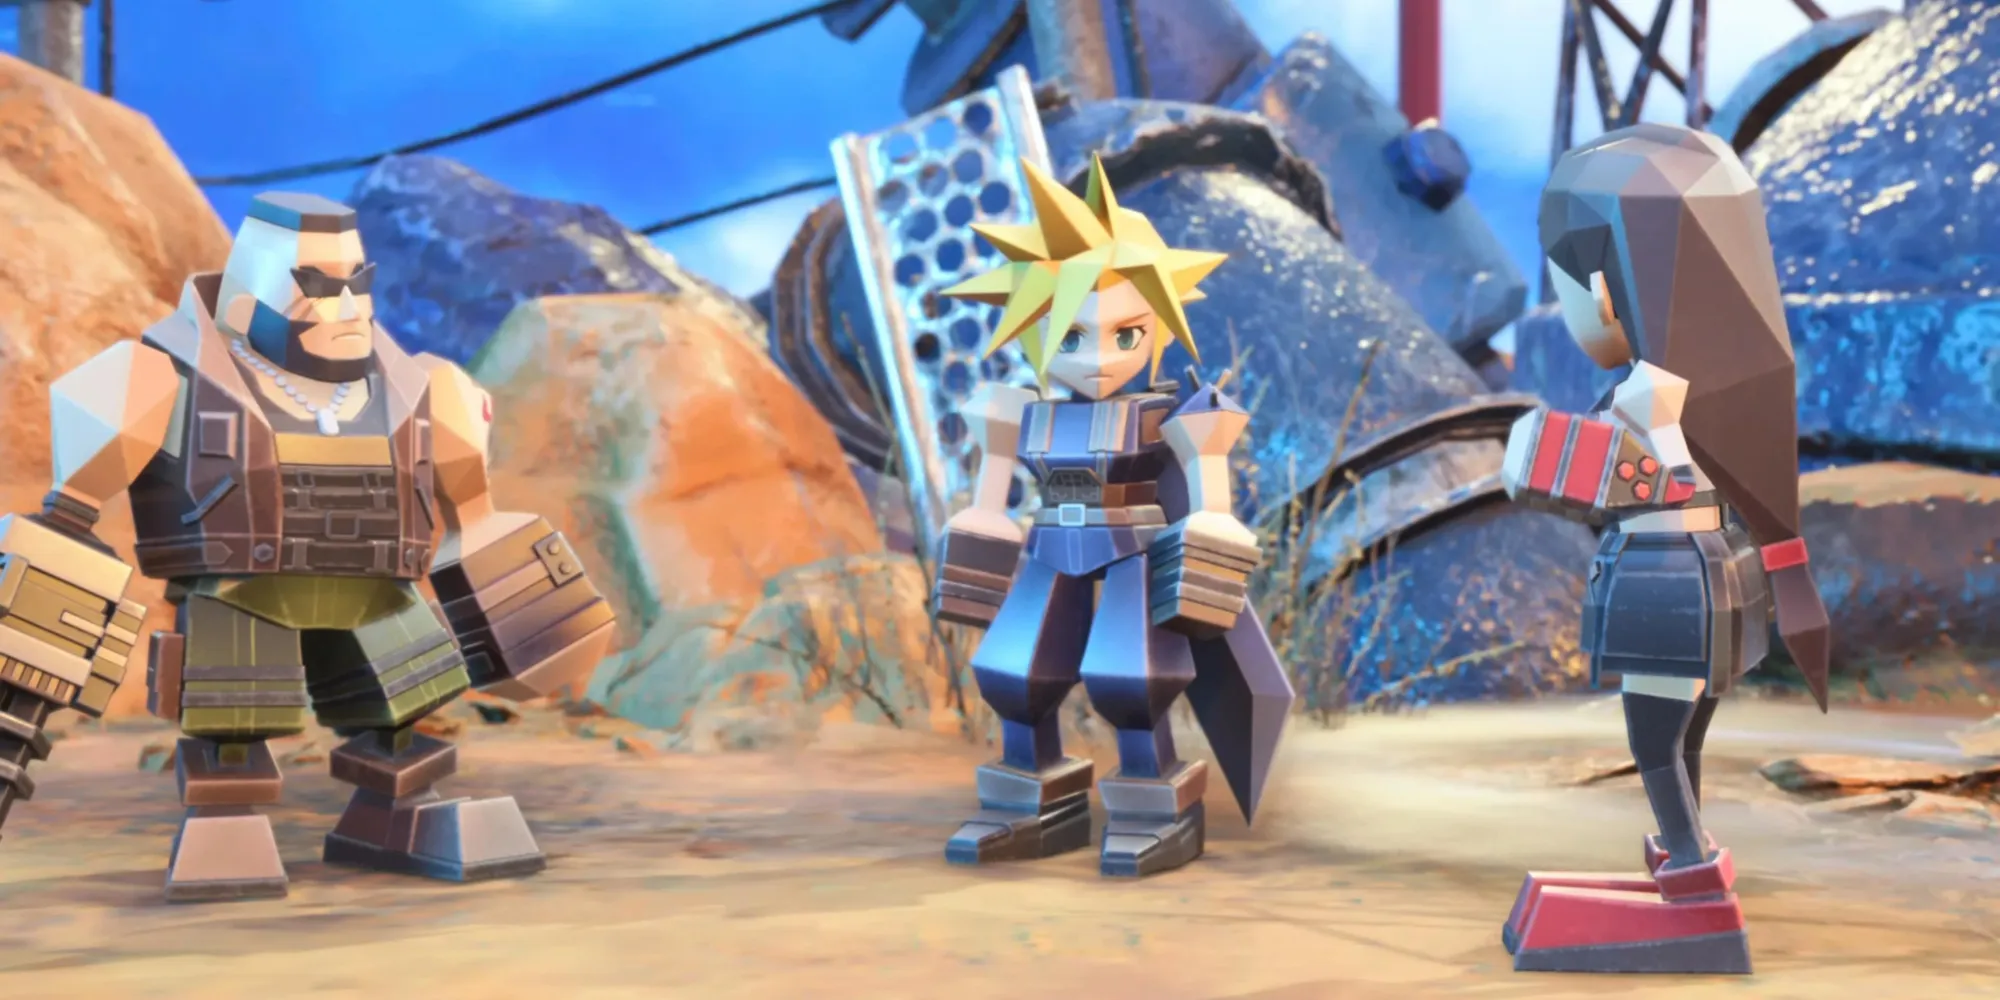 Barret, Cloud, and Tifa as GameTopics in Fort Condor in Final Fantasy 7 Rebirth